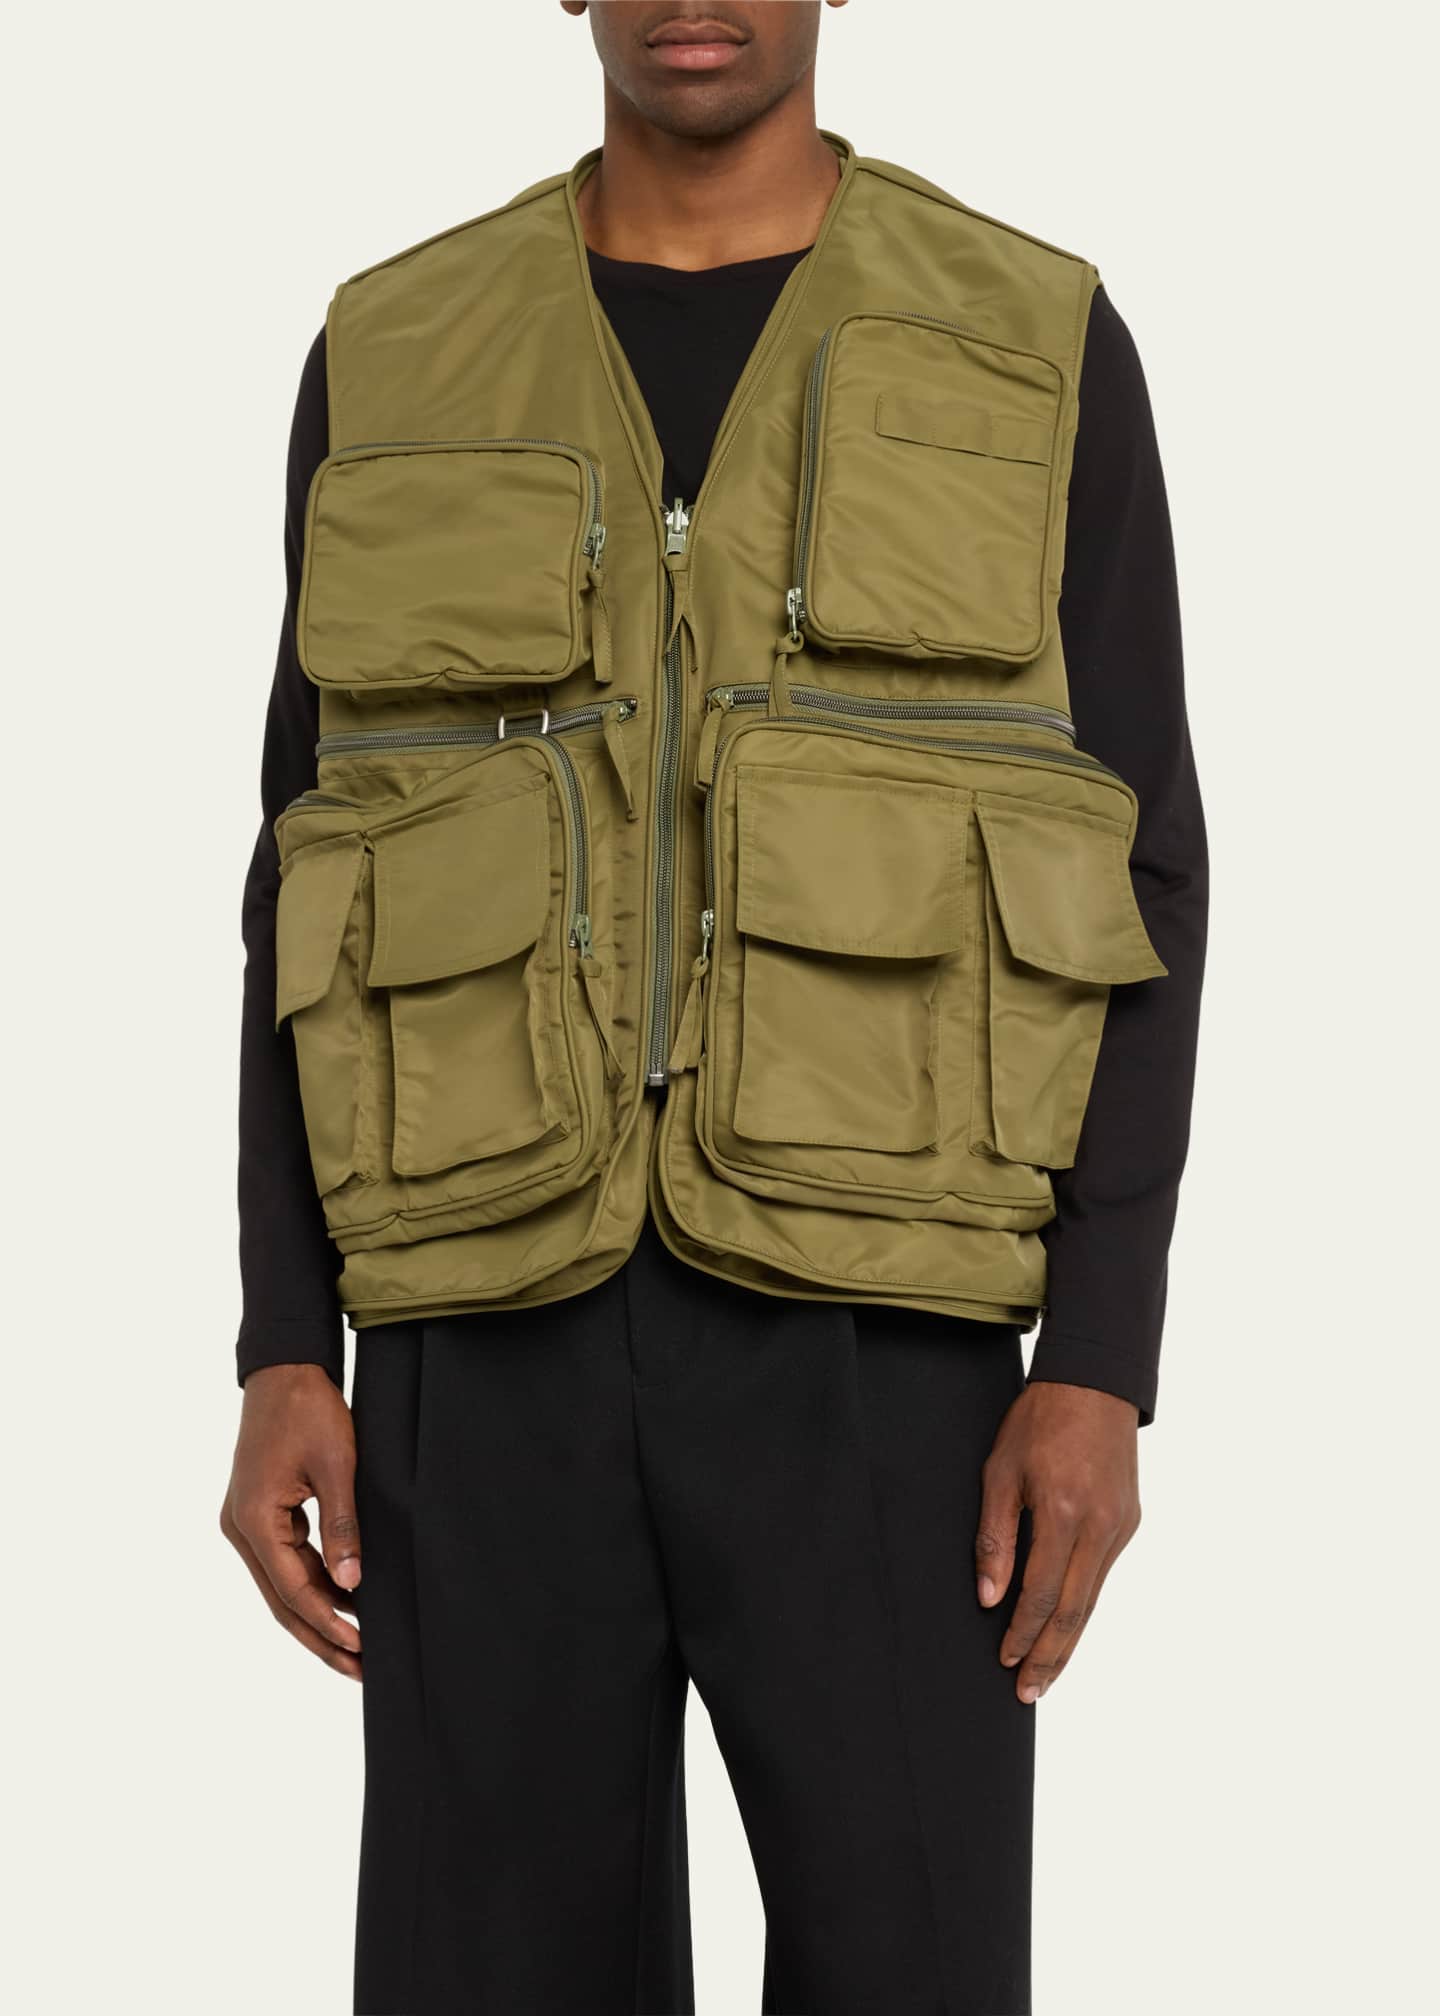 HED MAYNER Men's Cargo Tactical Vest